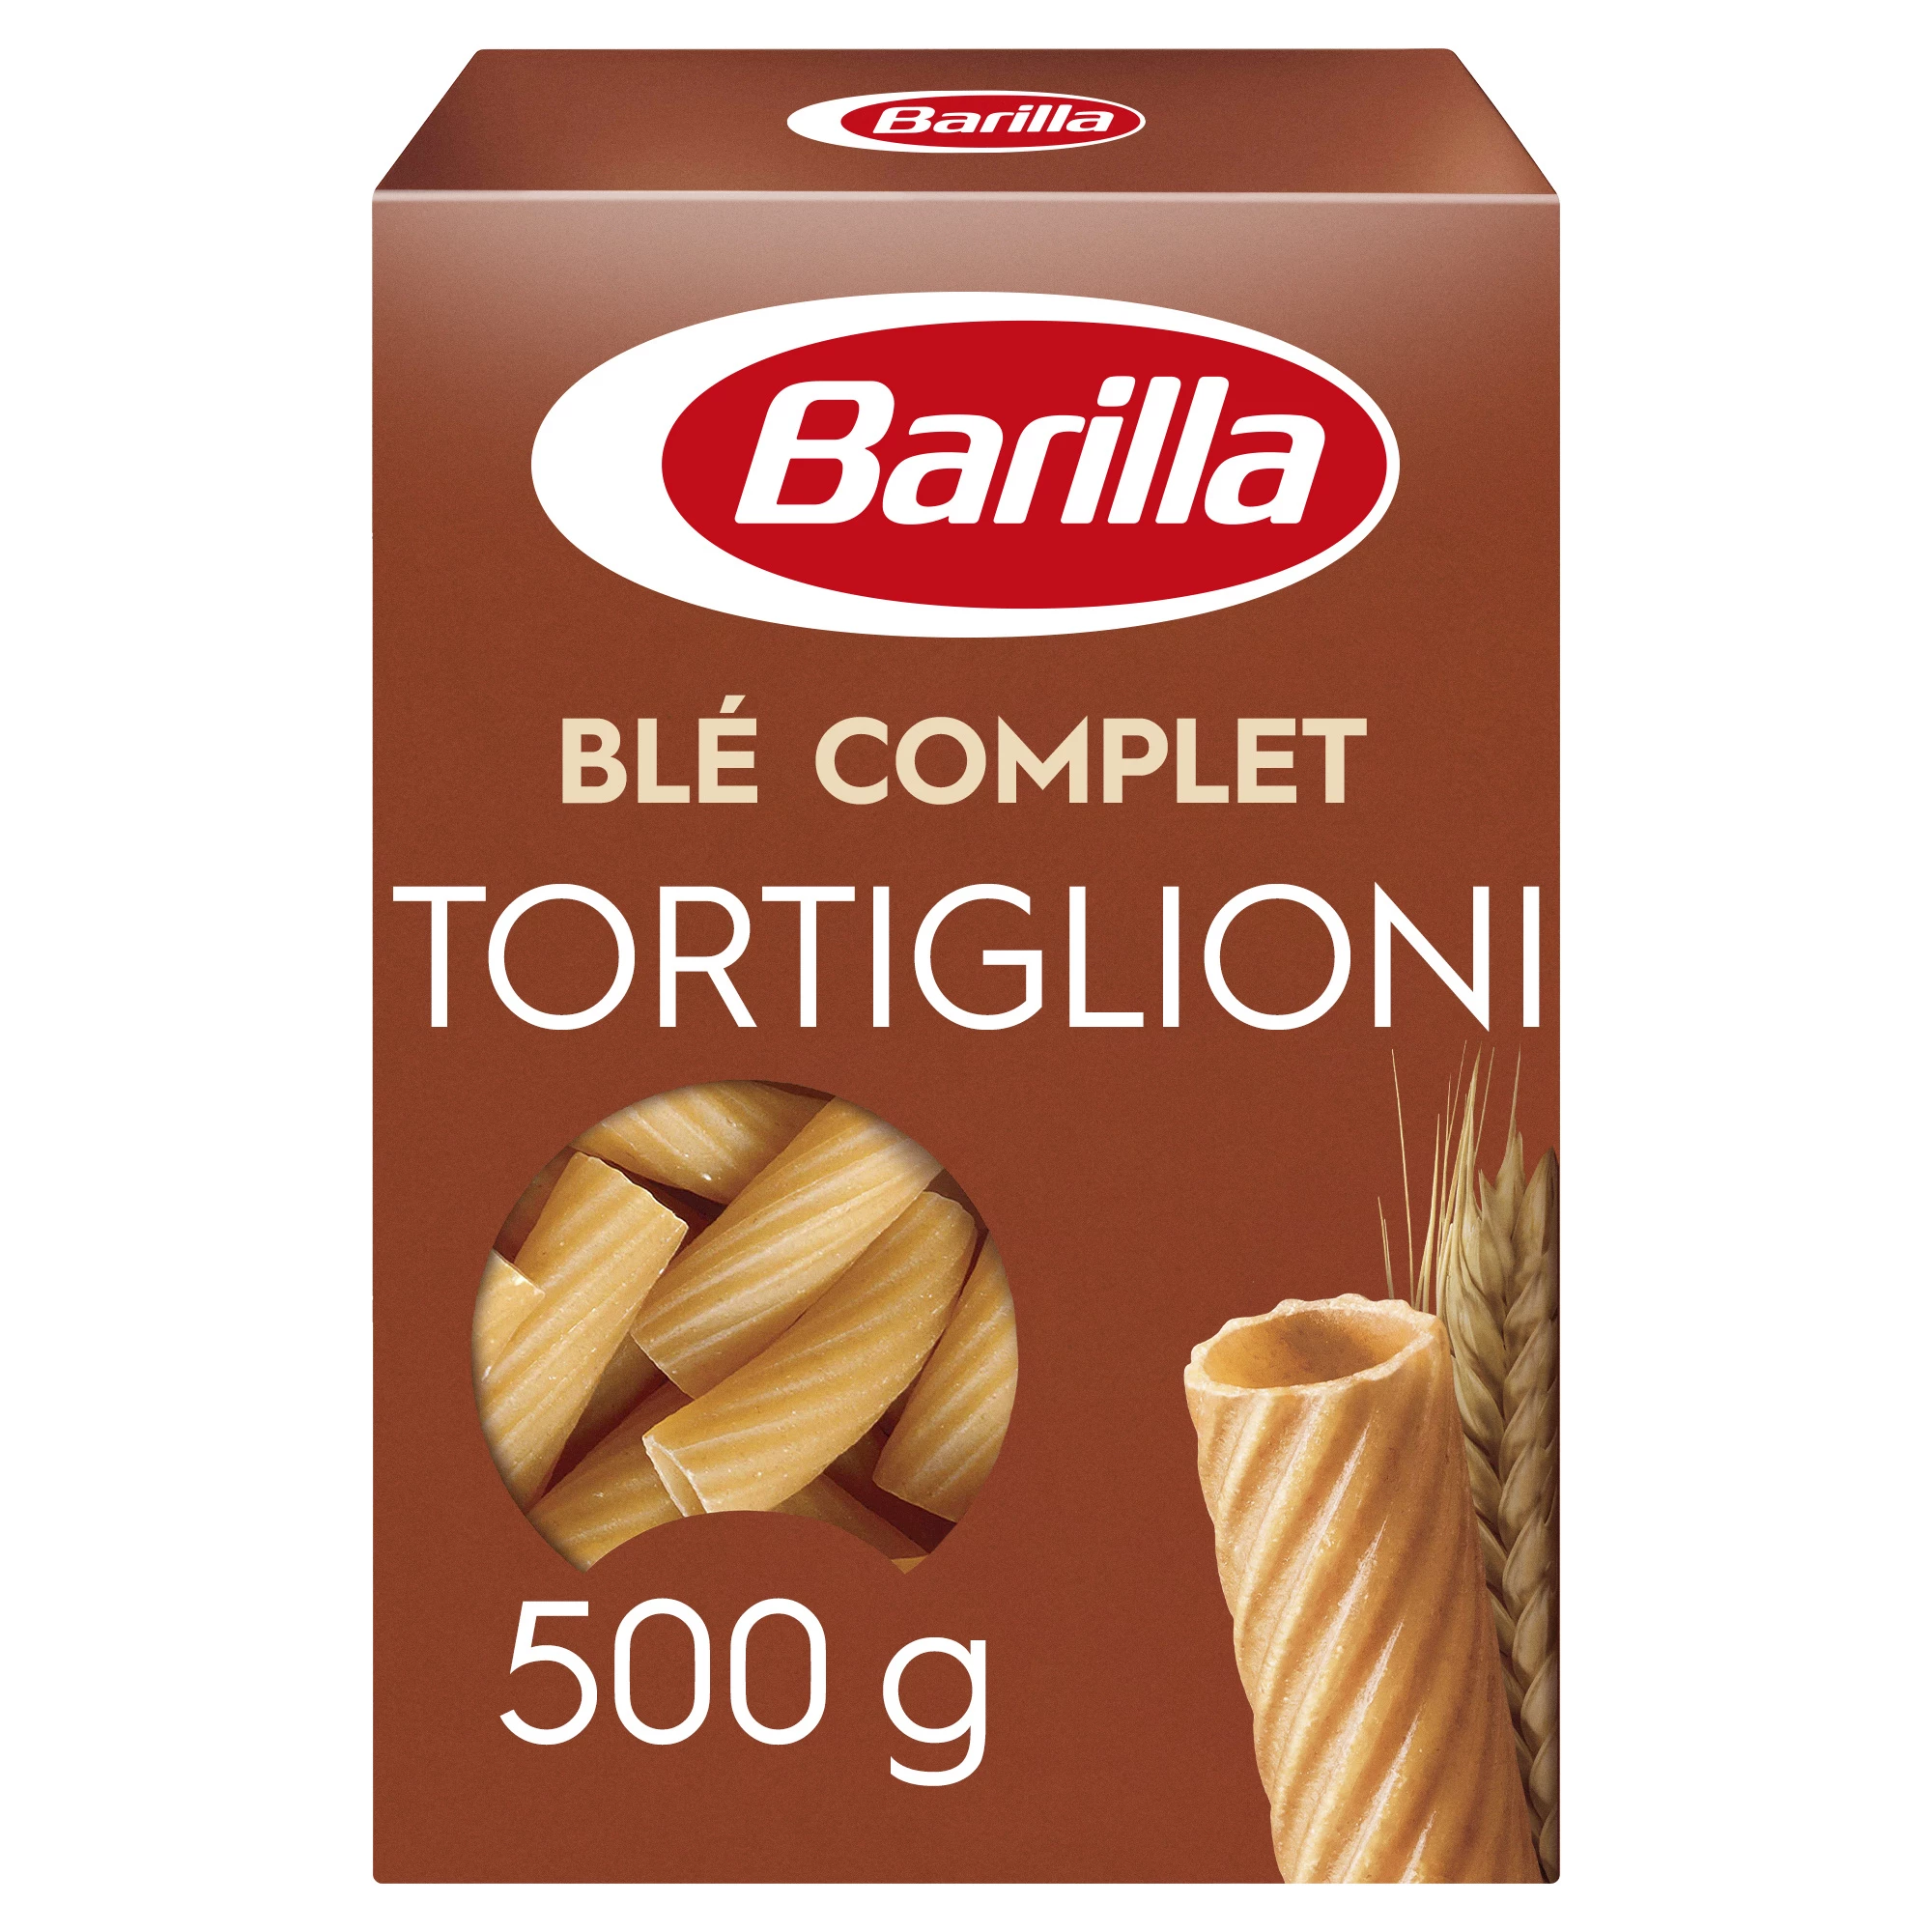 ComChicken Integra le Wheat Tortiglioni Pasta, 500g - BARILLA